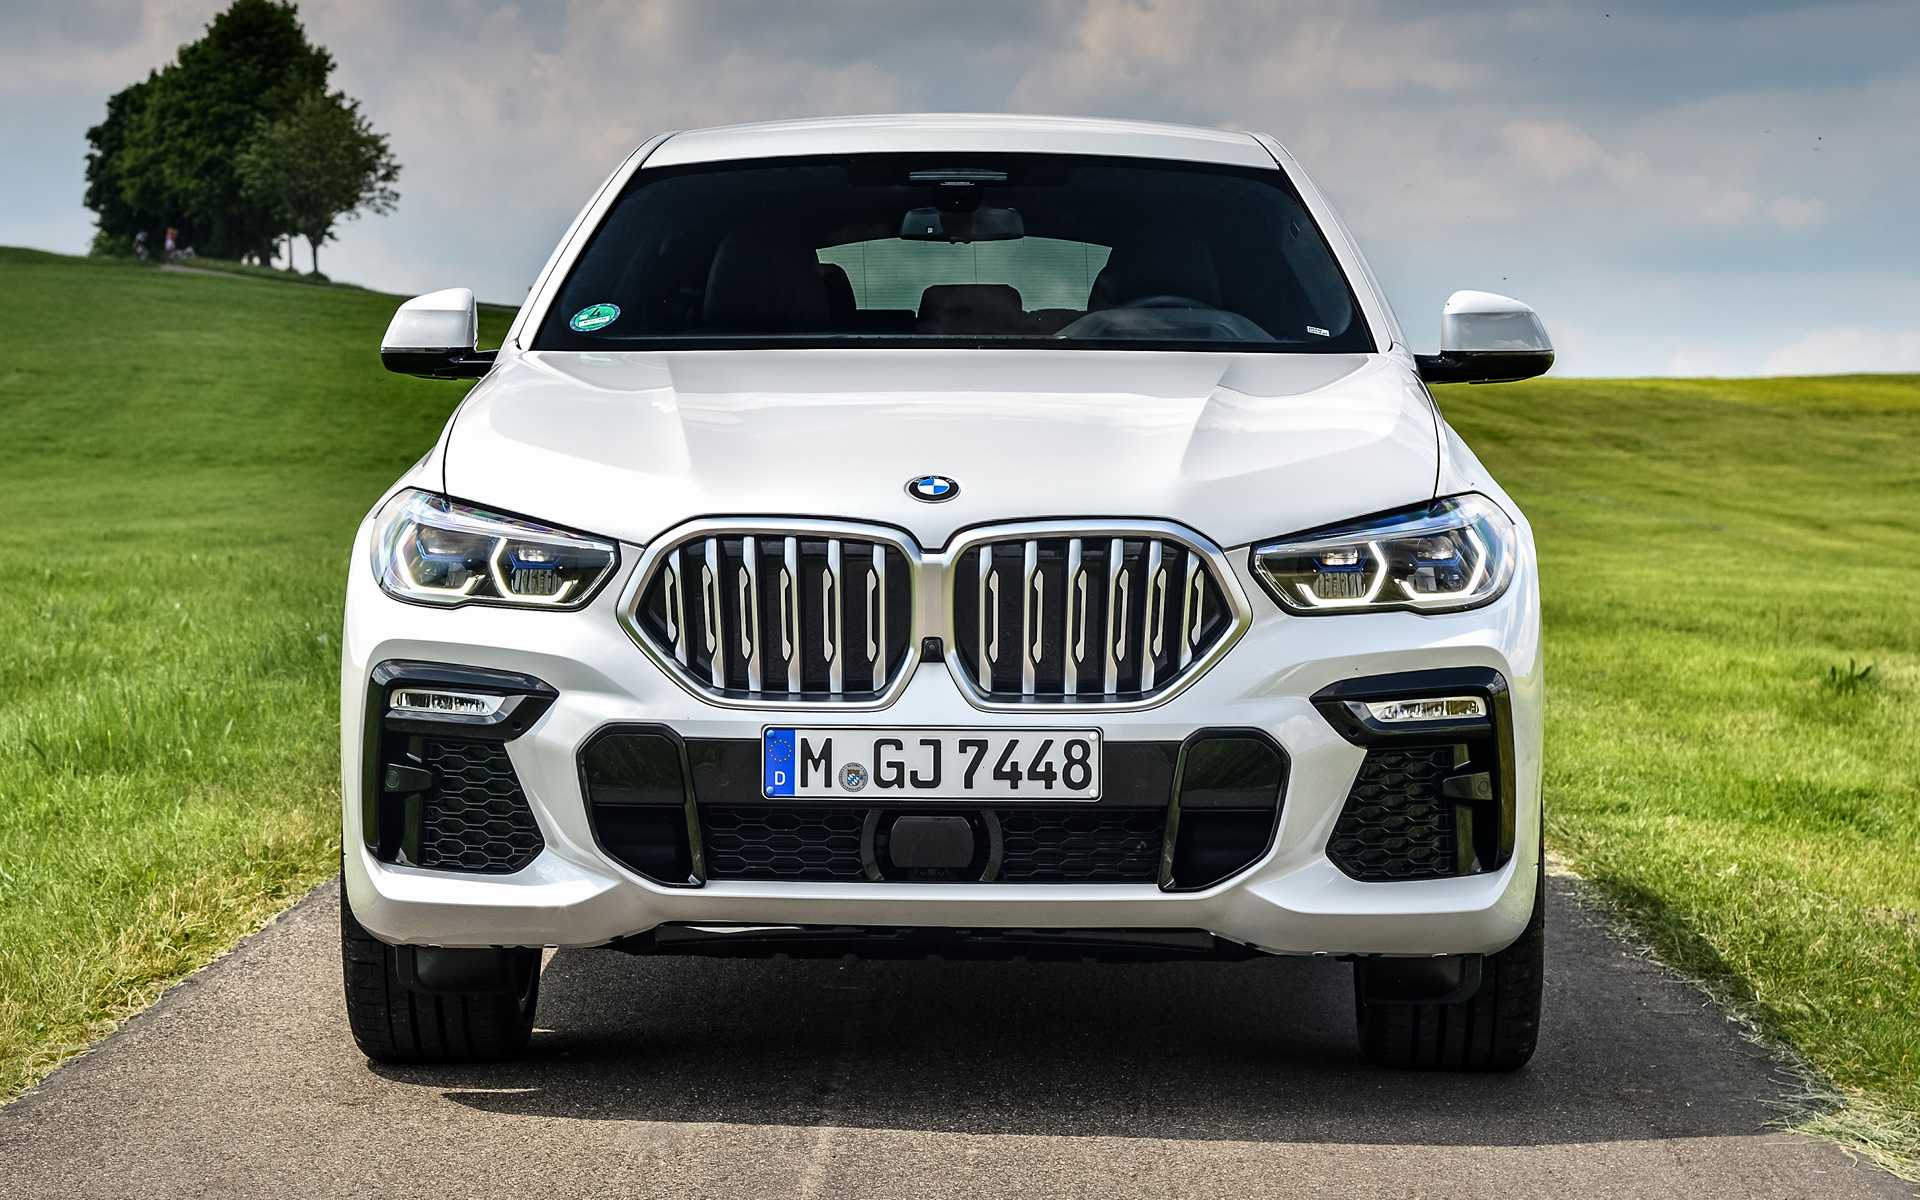 Премьера купеобразного кроссовера BMW X6 G06 состоялась в июле девятнадцатого, а уже 1 октября баварцы рассекретили заряженный вариант модели - X6 M